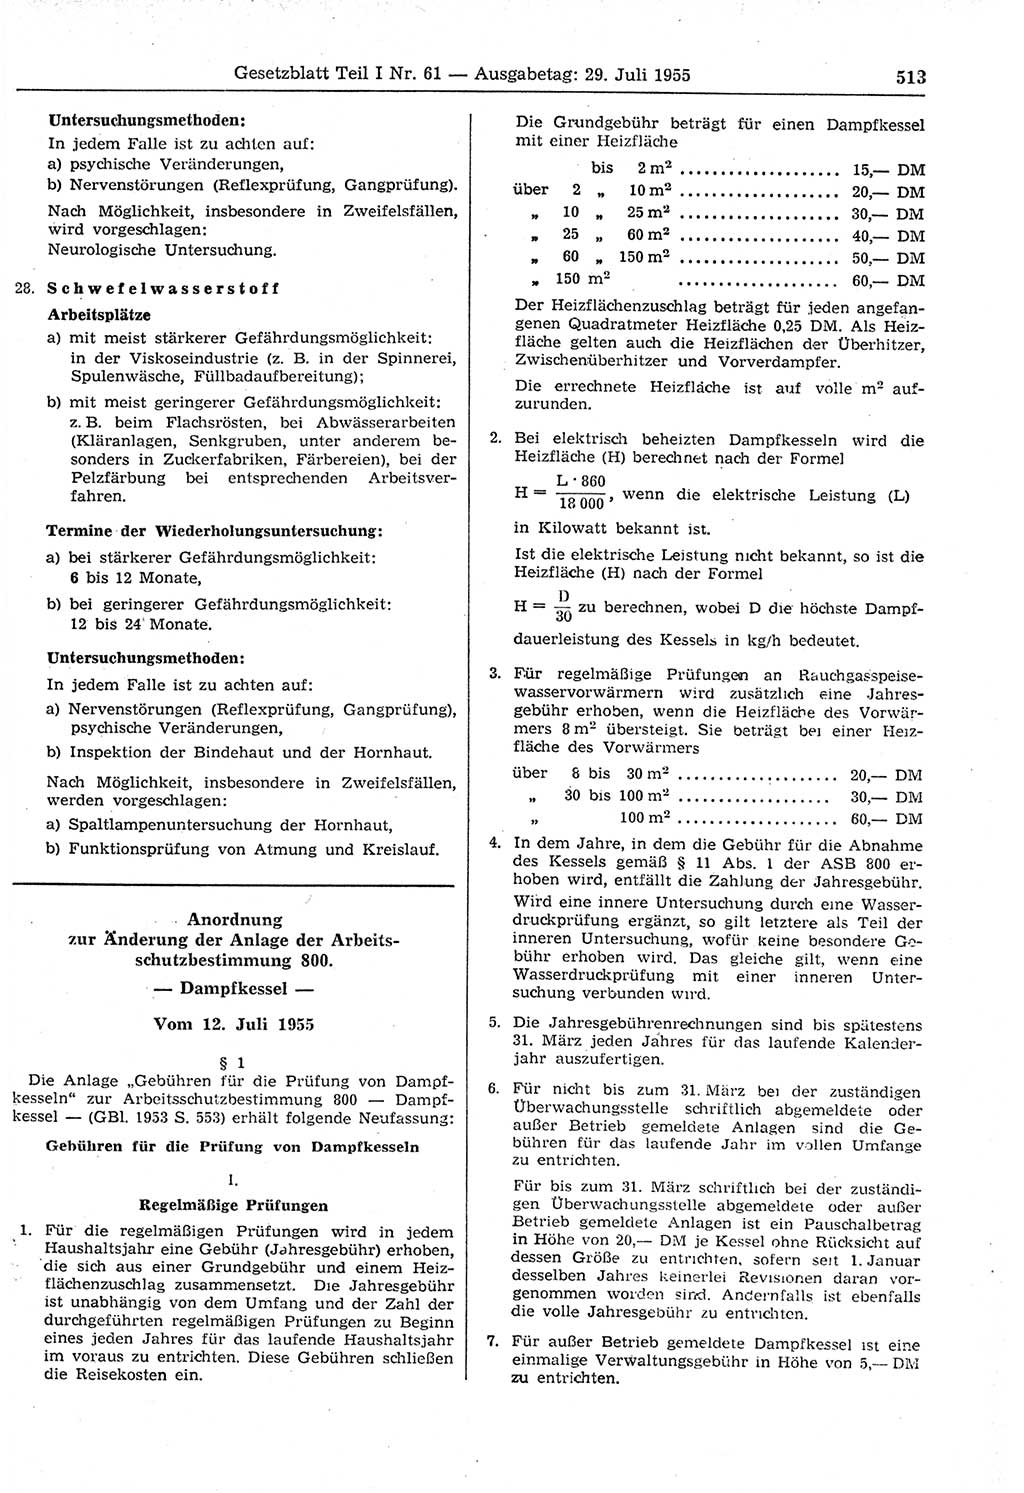 Gesetzblatt (GBl.) der Deutschen Demokratischen Republik (DDR) Teil Ⅰ 1955, Seite 513 (GBl. DDR Ⅰ 1955, S. 513)